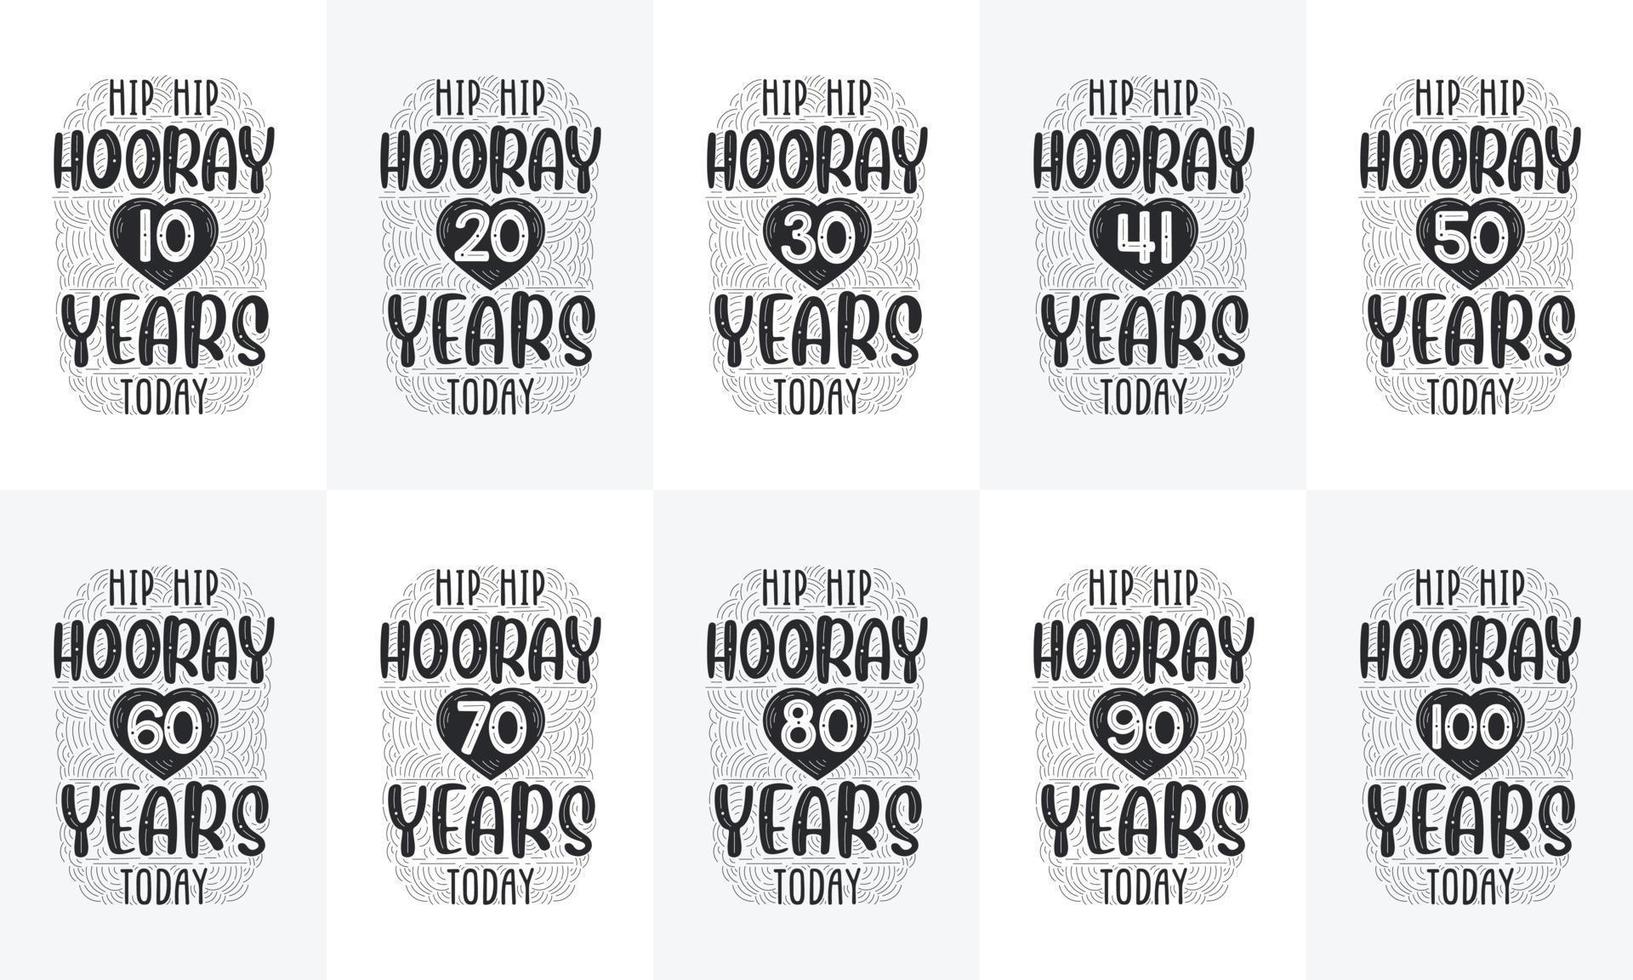 gelukkige verjaardag ontwerpset. beste verjaardag typografie offerte ontwerpbundel. hiep hiep hoera 10, 18, 20, 30, 40, 50, 60, 70, 80, 90, 100 jaar vandaag vector